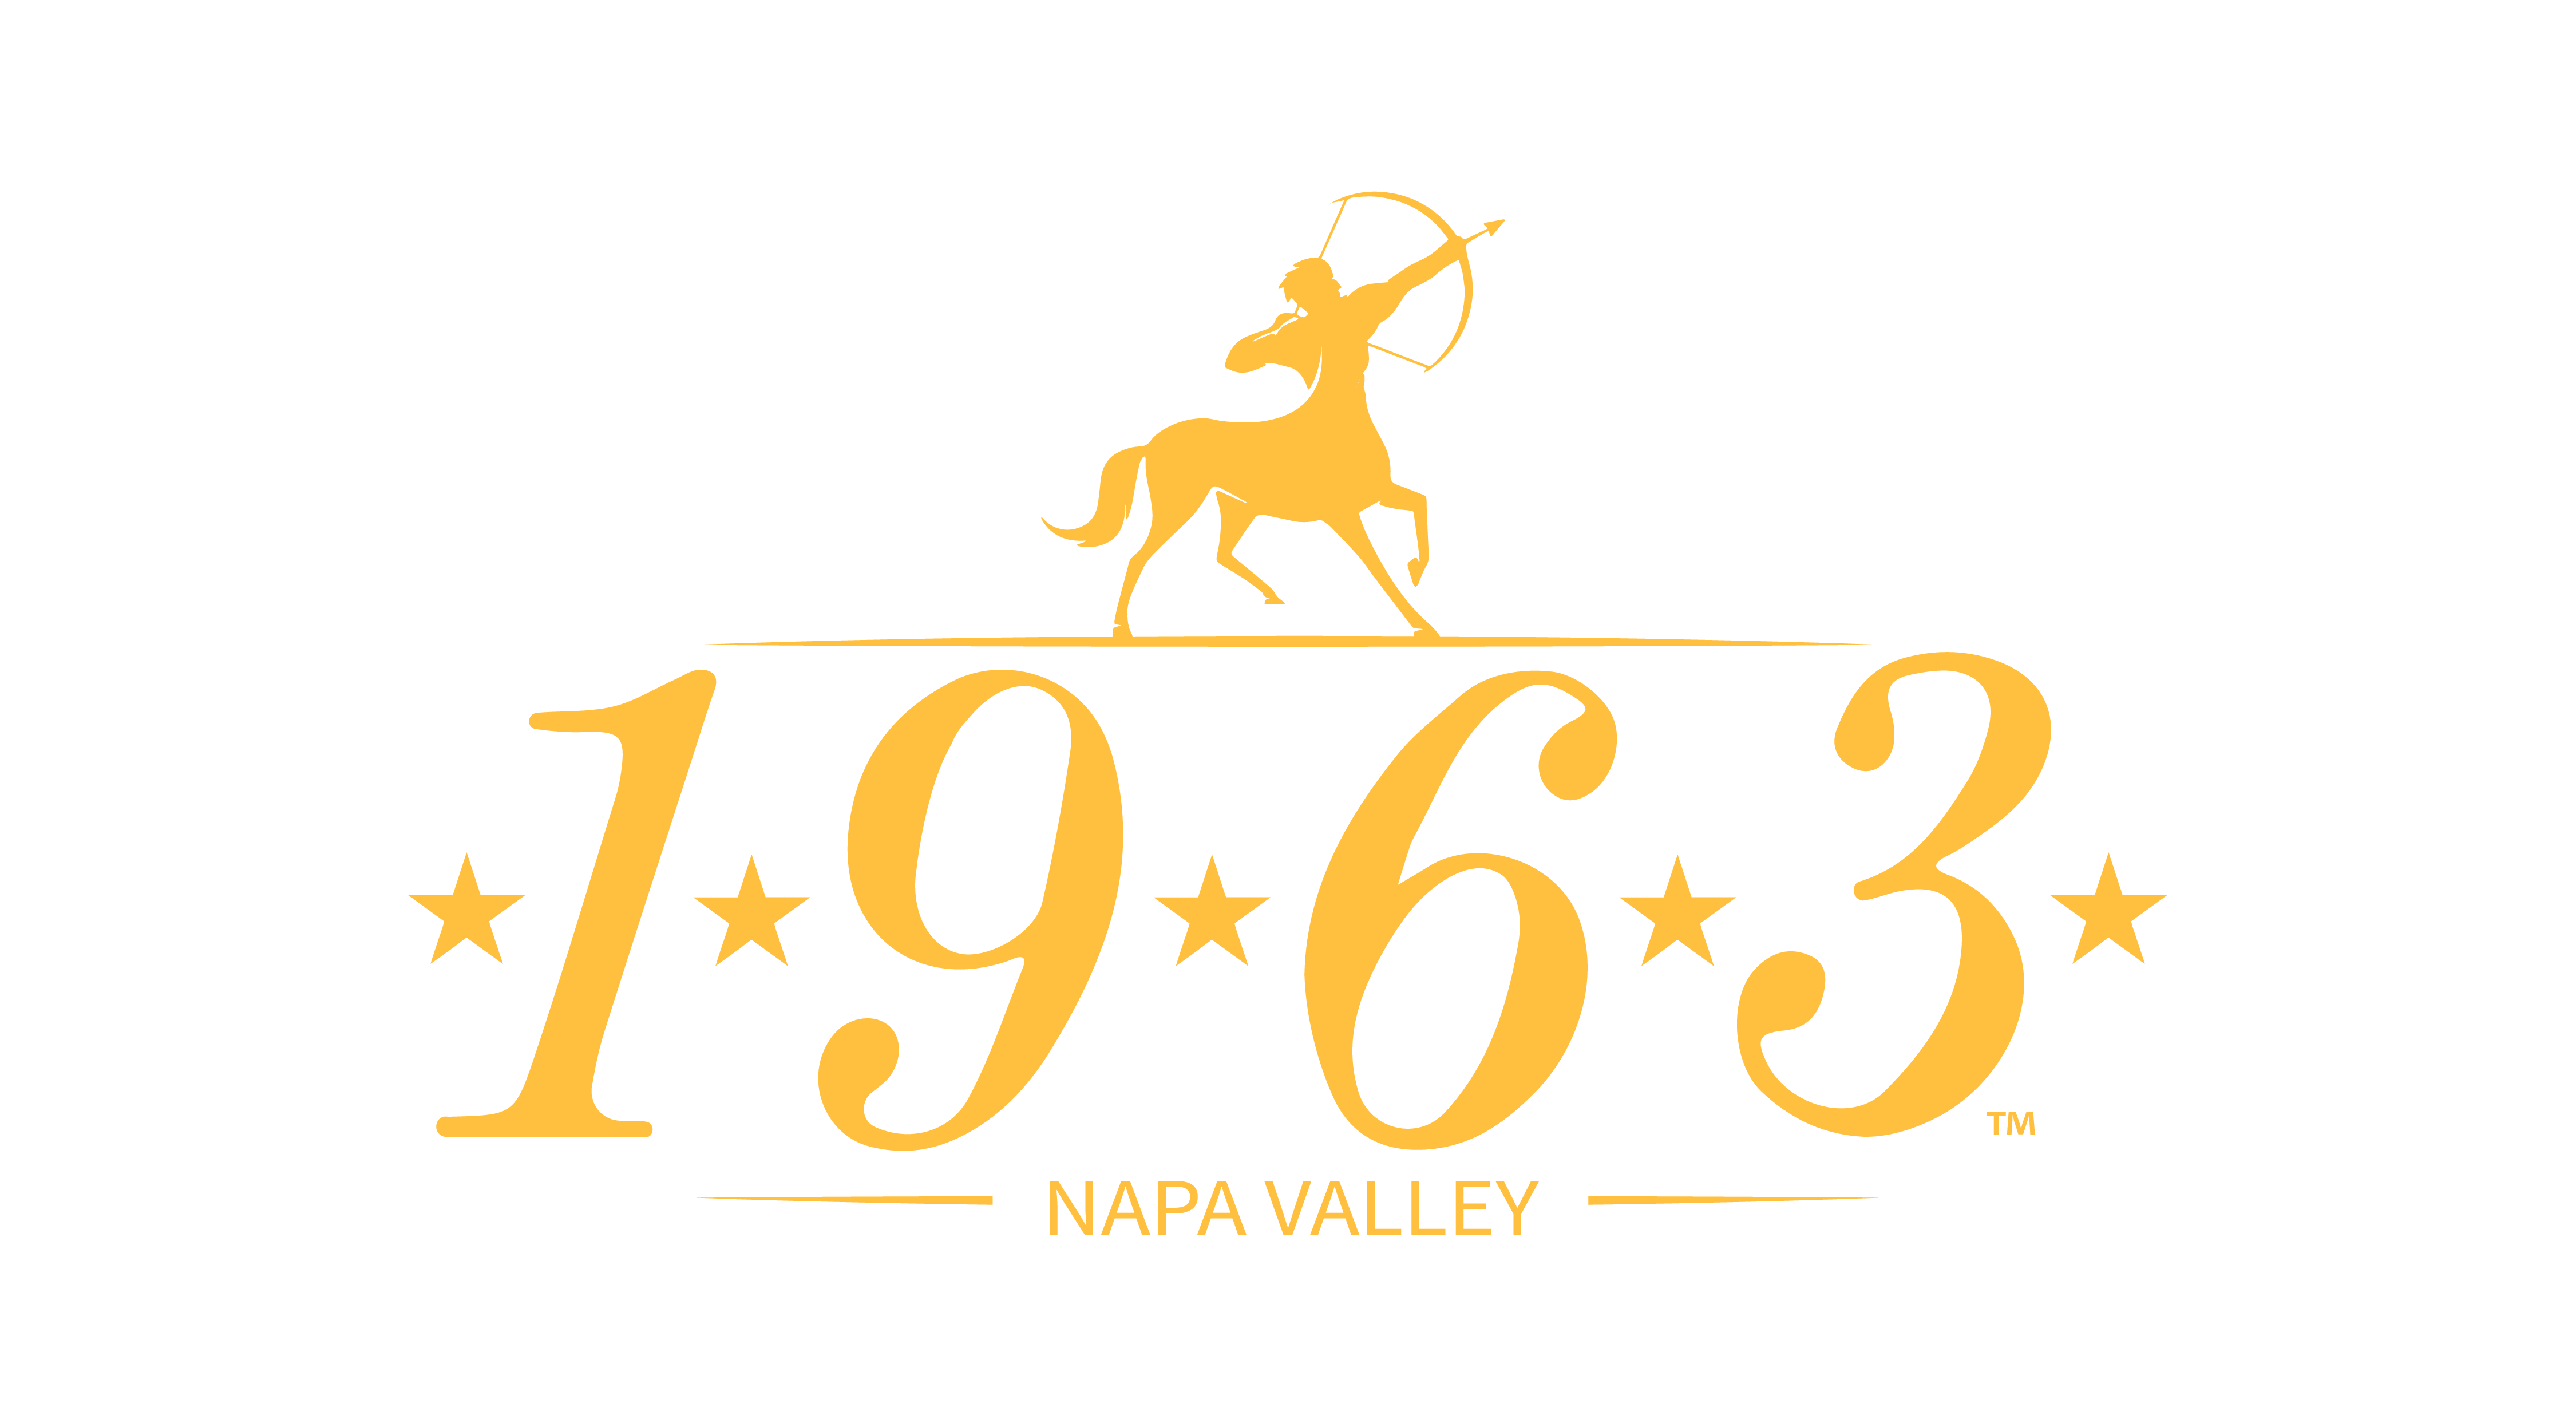 1963 Napa Valley